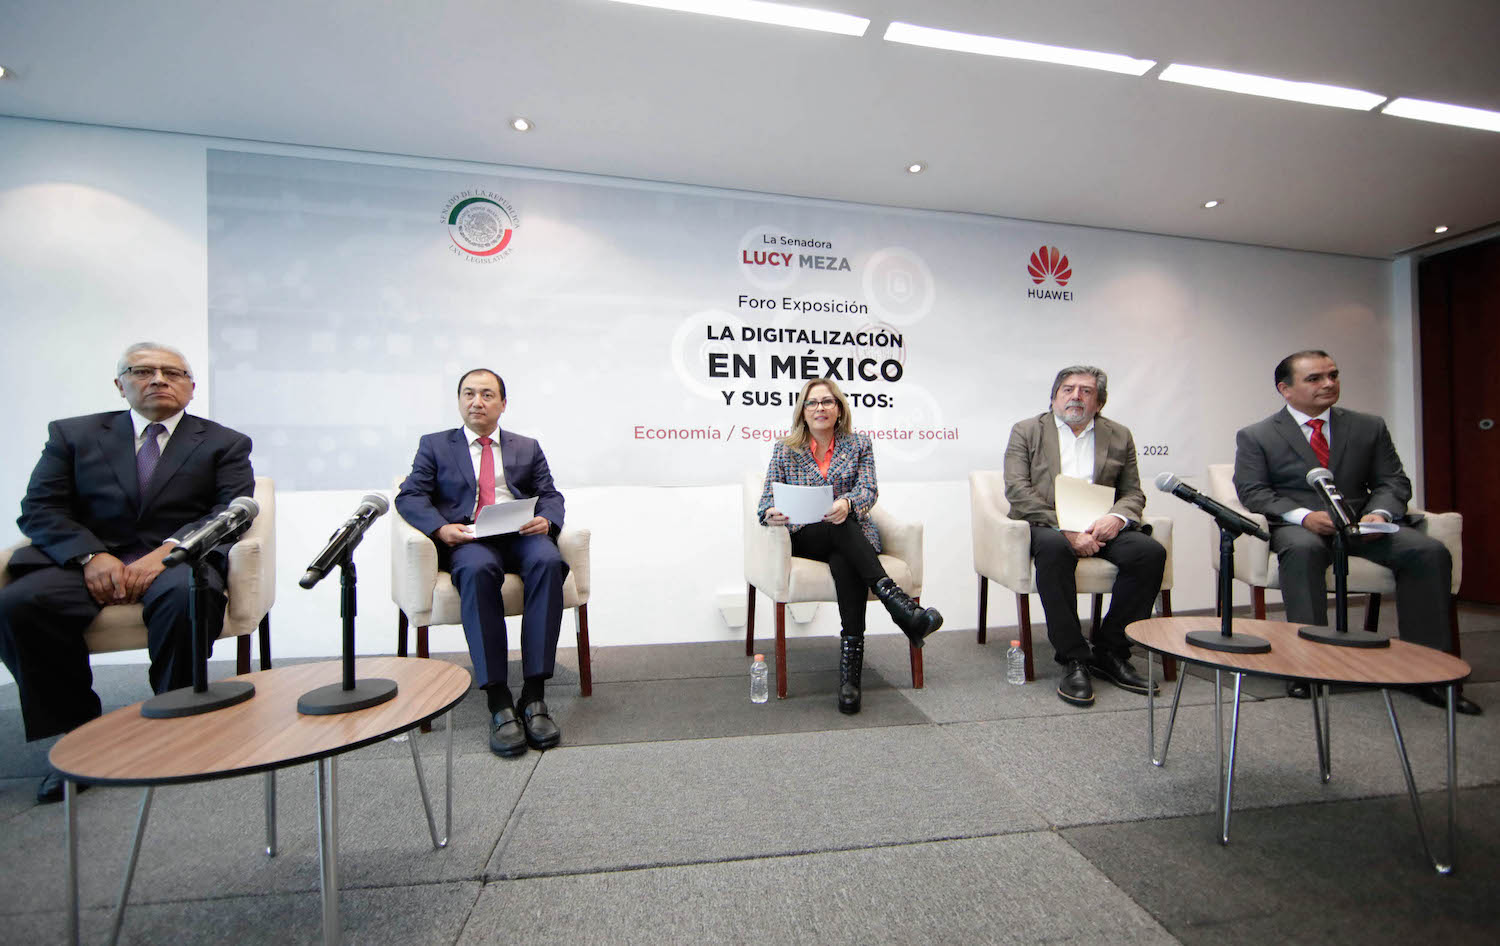 Foro-exposición “La digitalización en México y sus impactos: economía-seguridad-bienestar social”